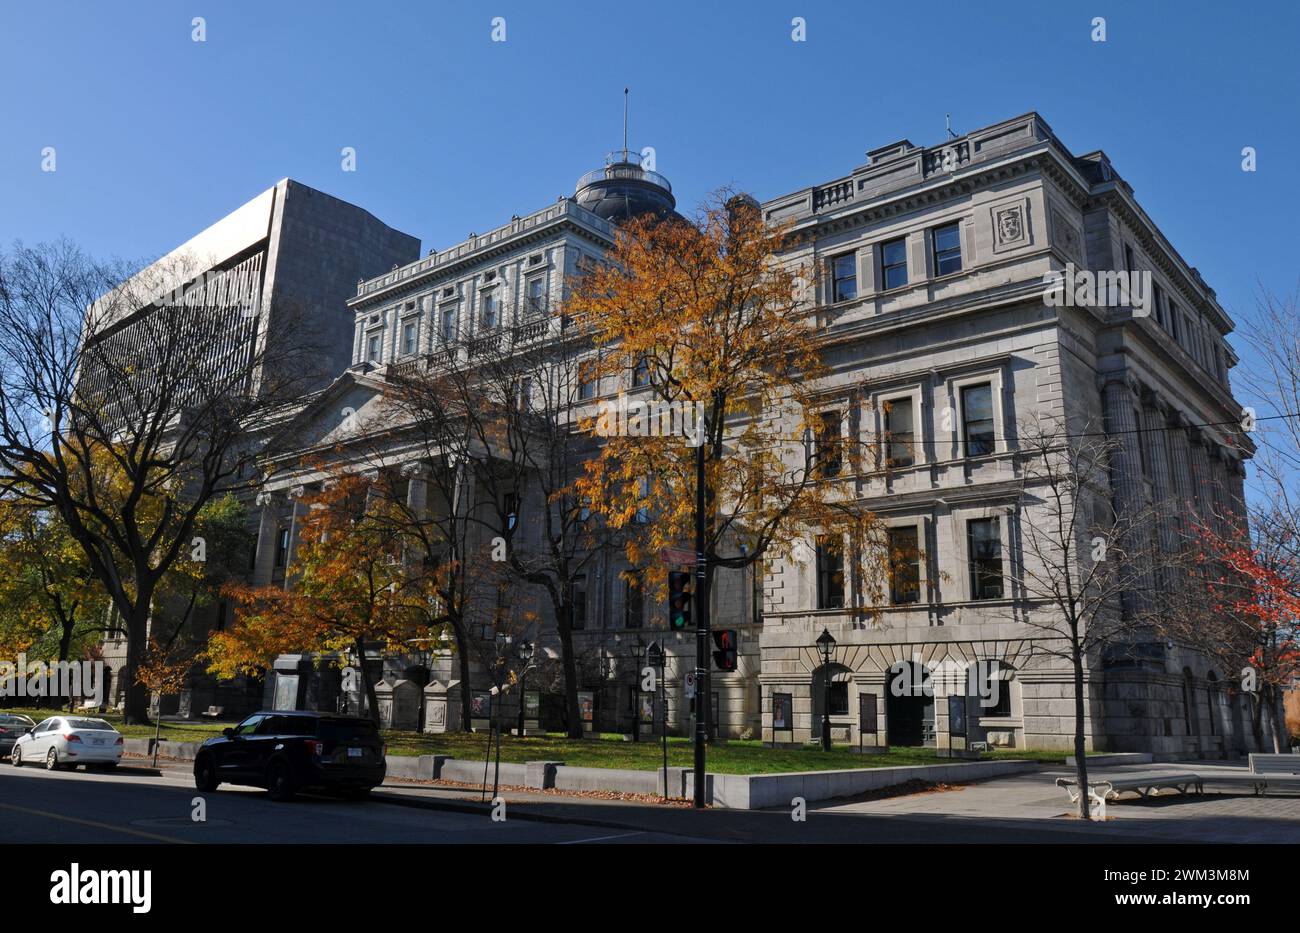 Das neoklassizistische Lucien-Saulnier Building, auch bekannt als Old Courthouse, wurde 1856 in Montreal eröffnet und beherbergt vorübergehend Rathausfunktionen. Stockfoto